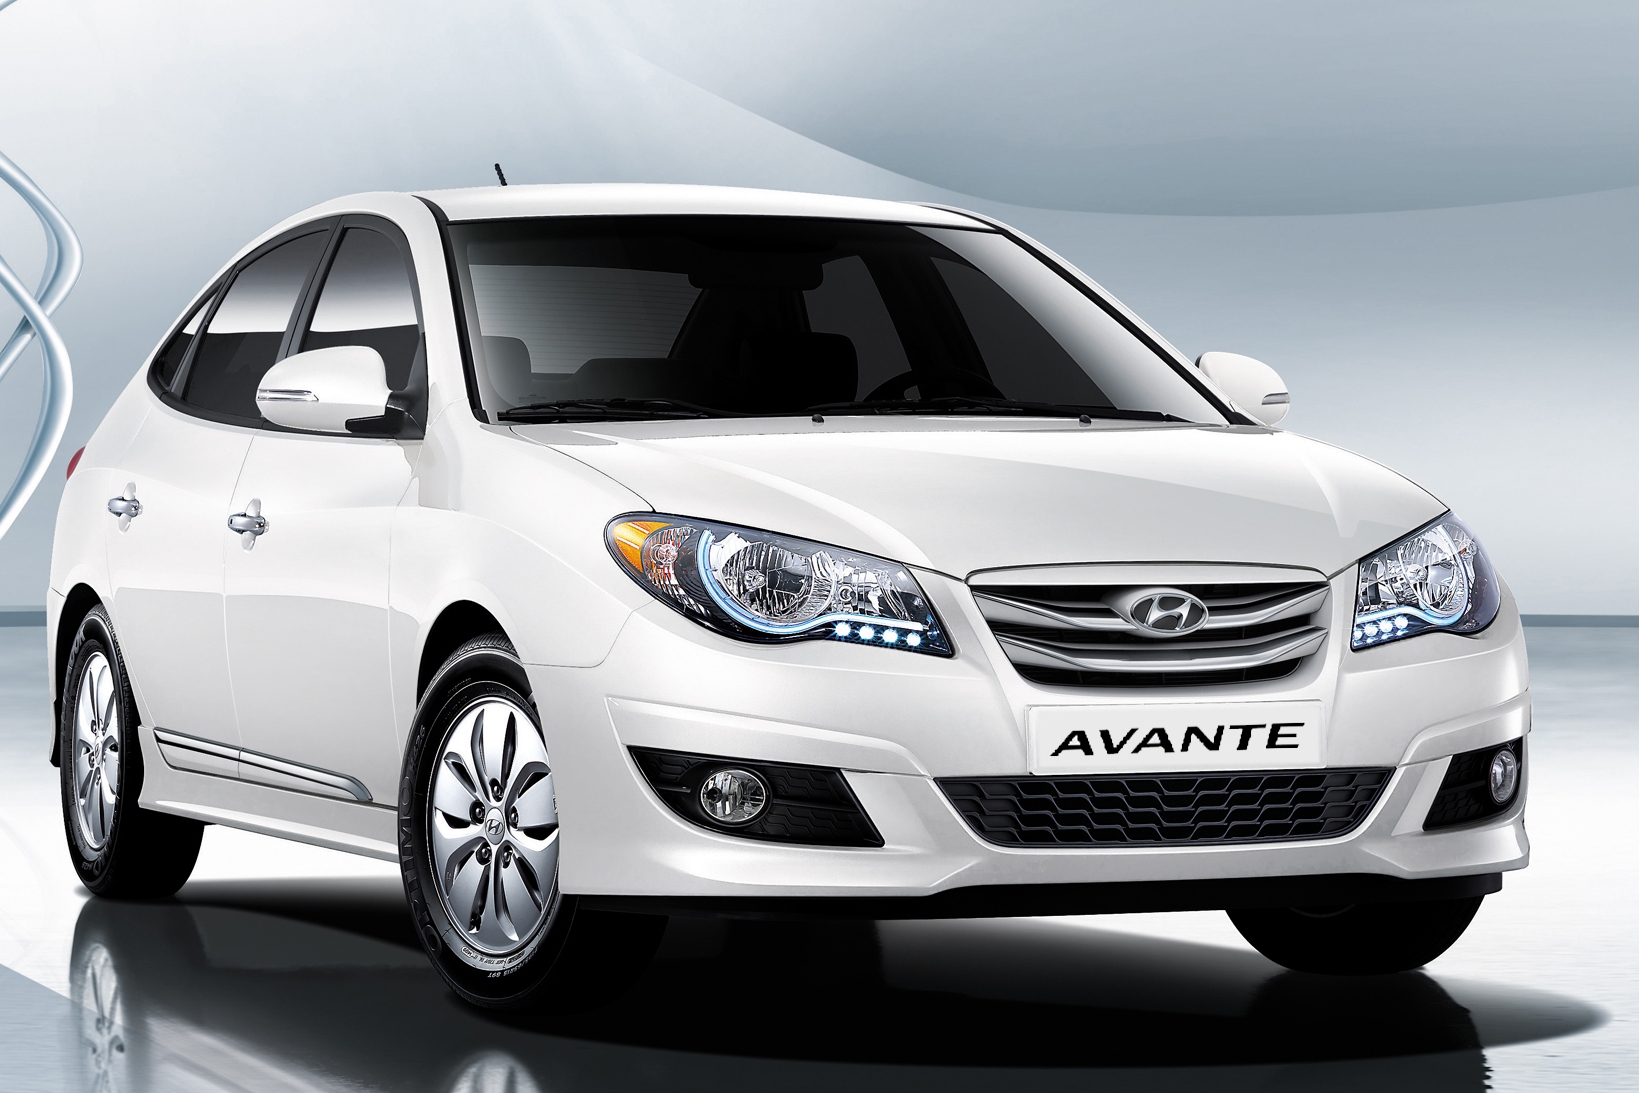 Bán xe ô tô Hyundai Avante 2011 giá 253 triệu  2122751